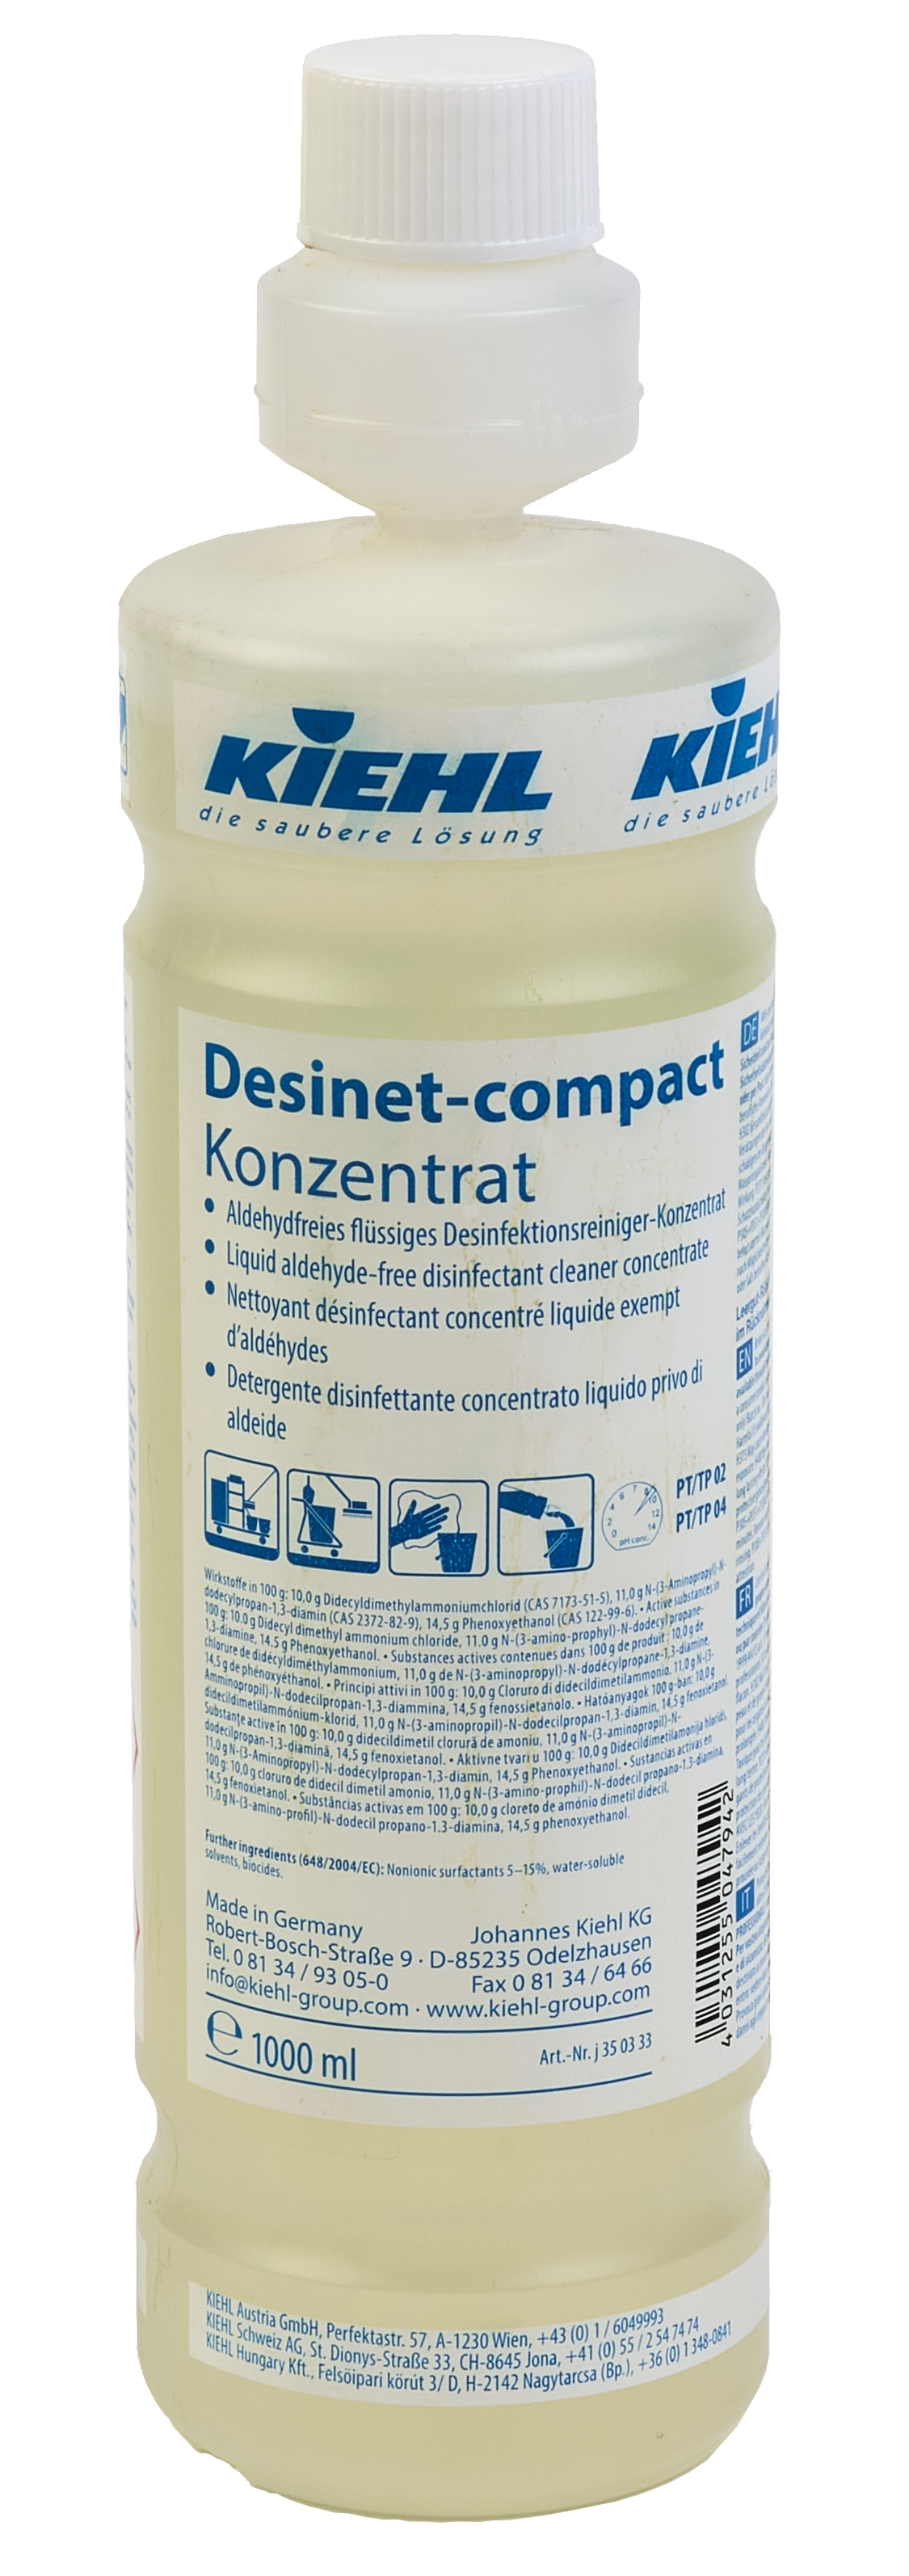 1 Desinet-compact von Liter Flasche - Kiehl Desinfektionsreiniger-Konzentrat